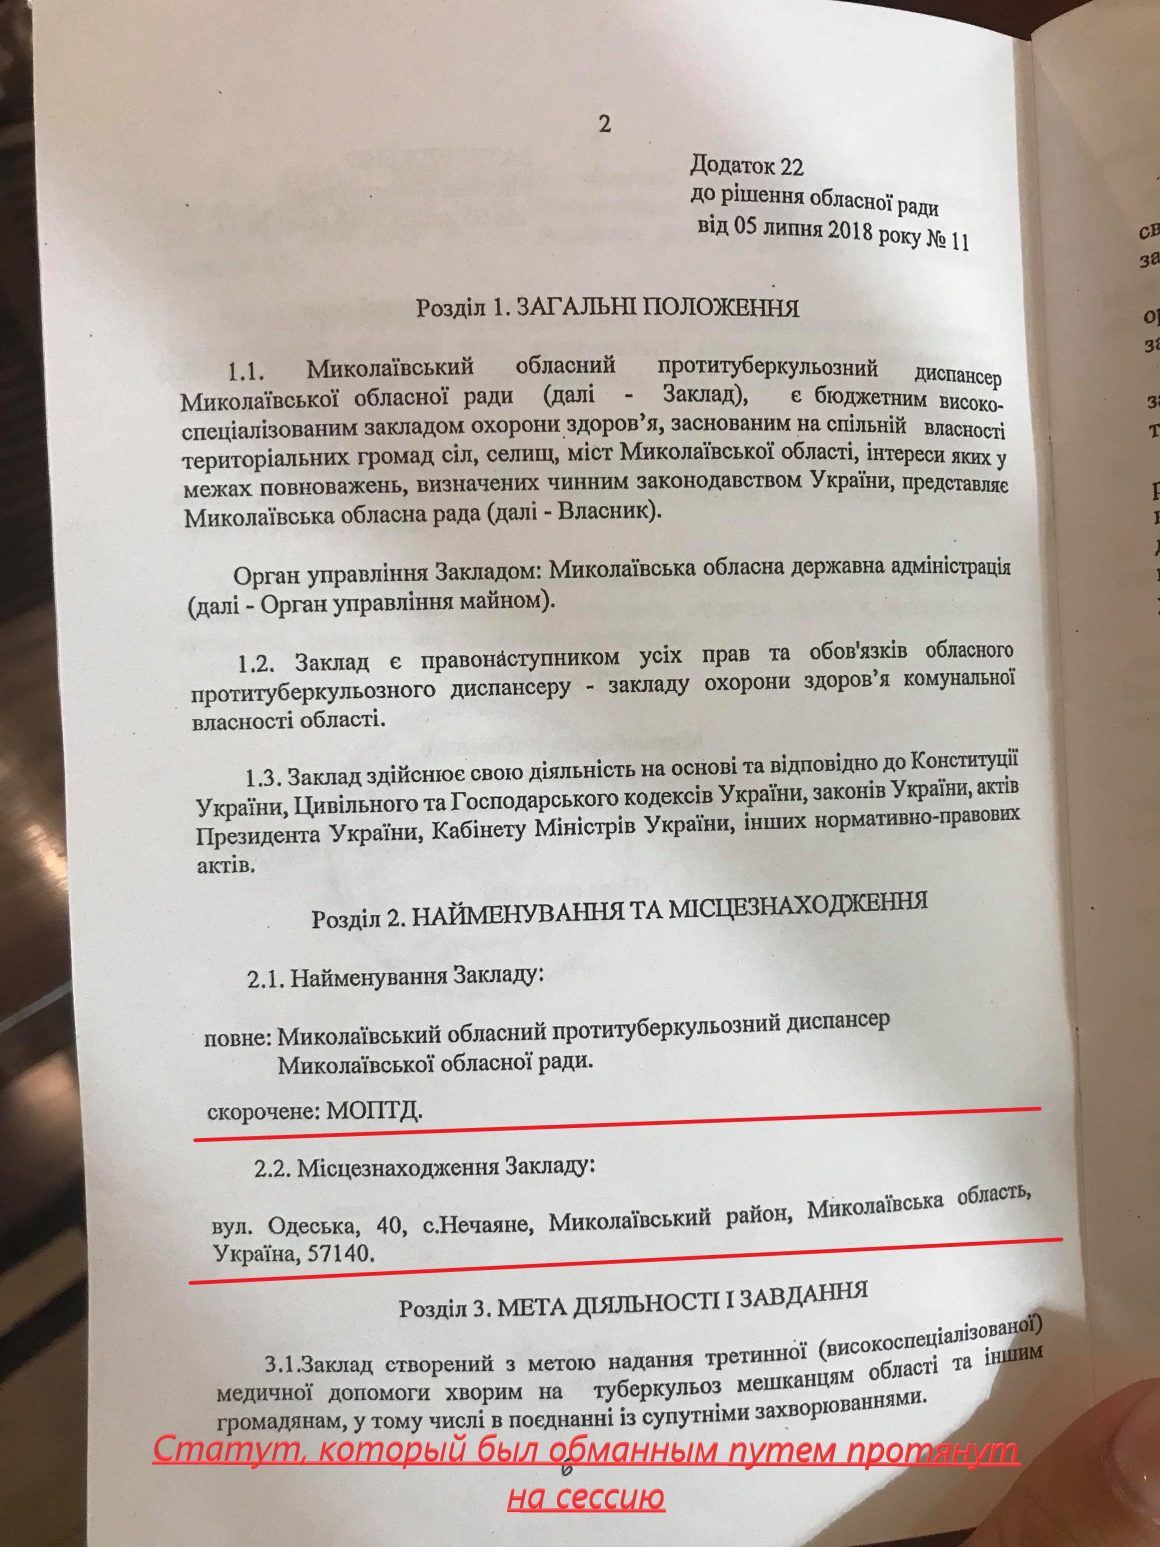 У Веснянского ОТГ "увели" тубдиспансер - Кормышкин требует отметить решение Николаевского облсовета 1